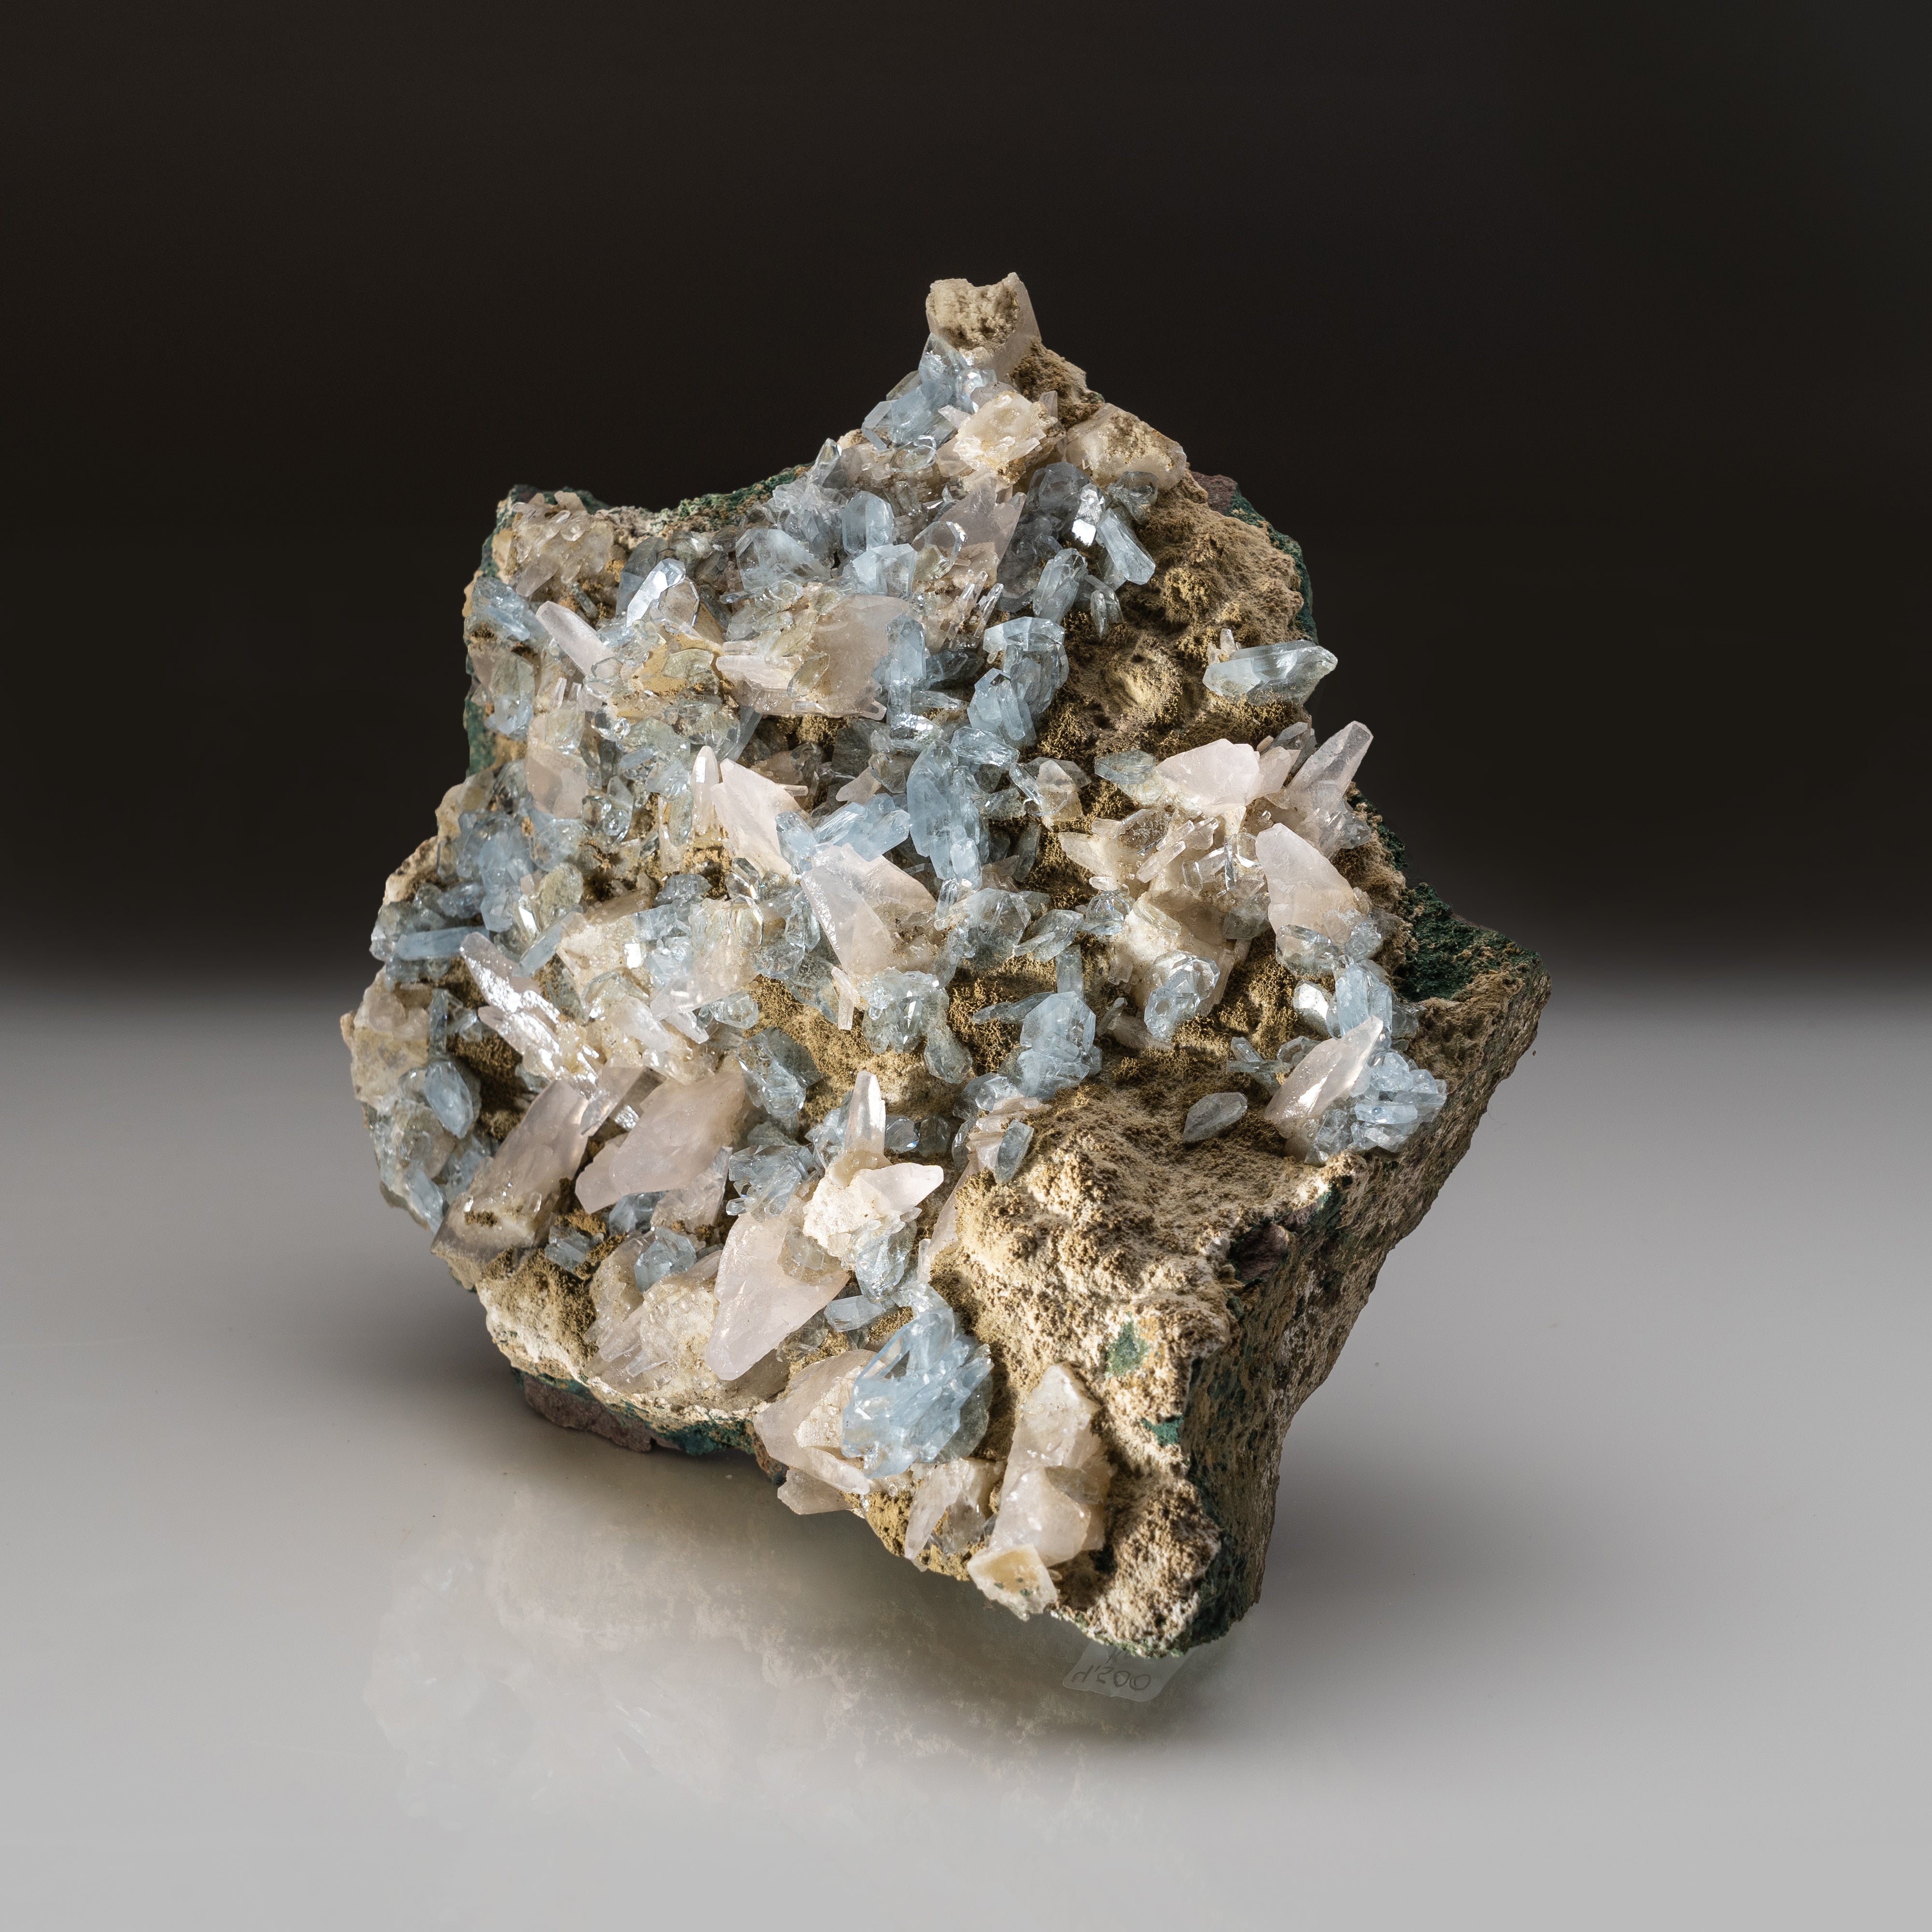 Blue Barite with Calcite on Matrix from Rio Grande do Sul, Brazil